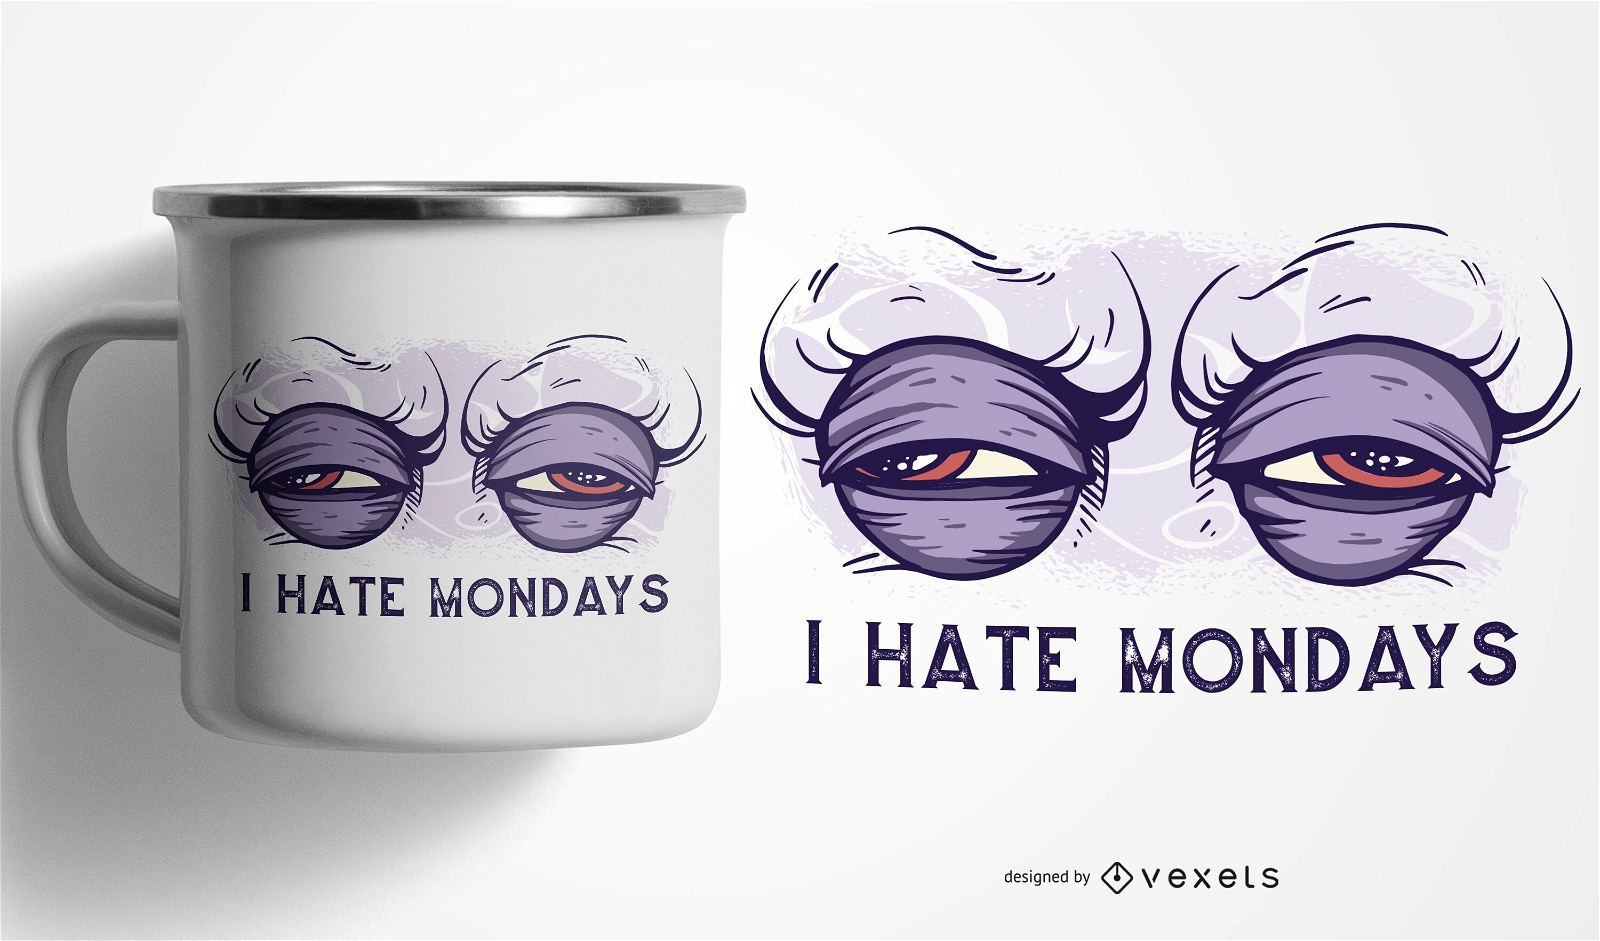 Eu odeio o design da caneca de segundas-feiras